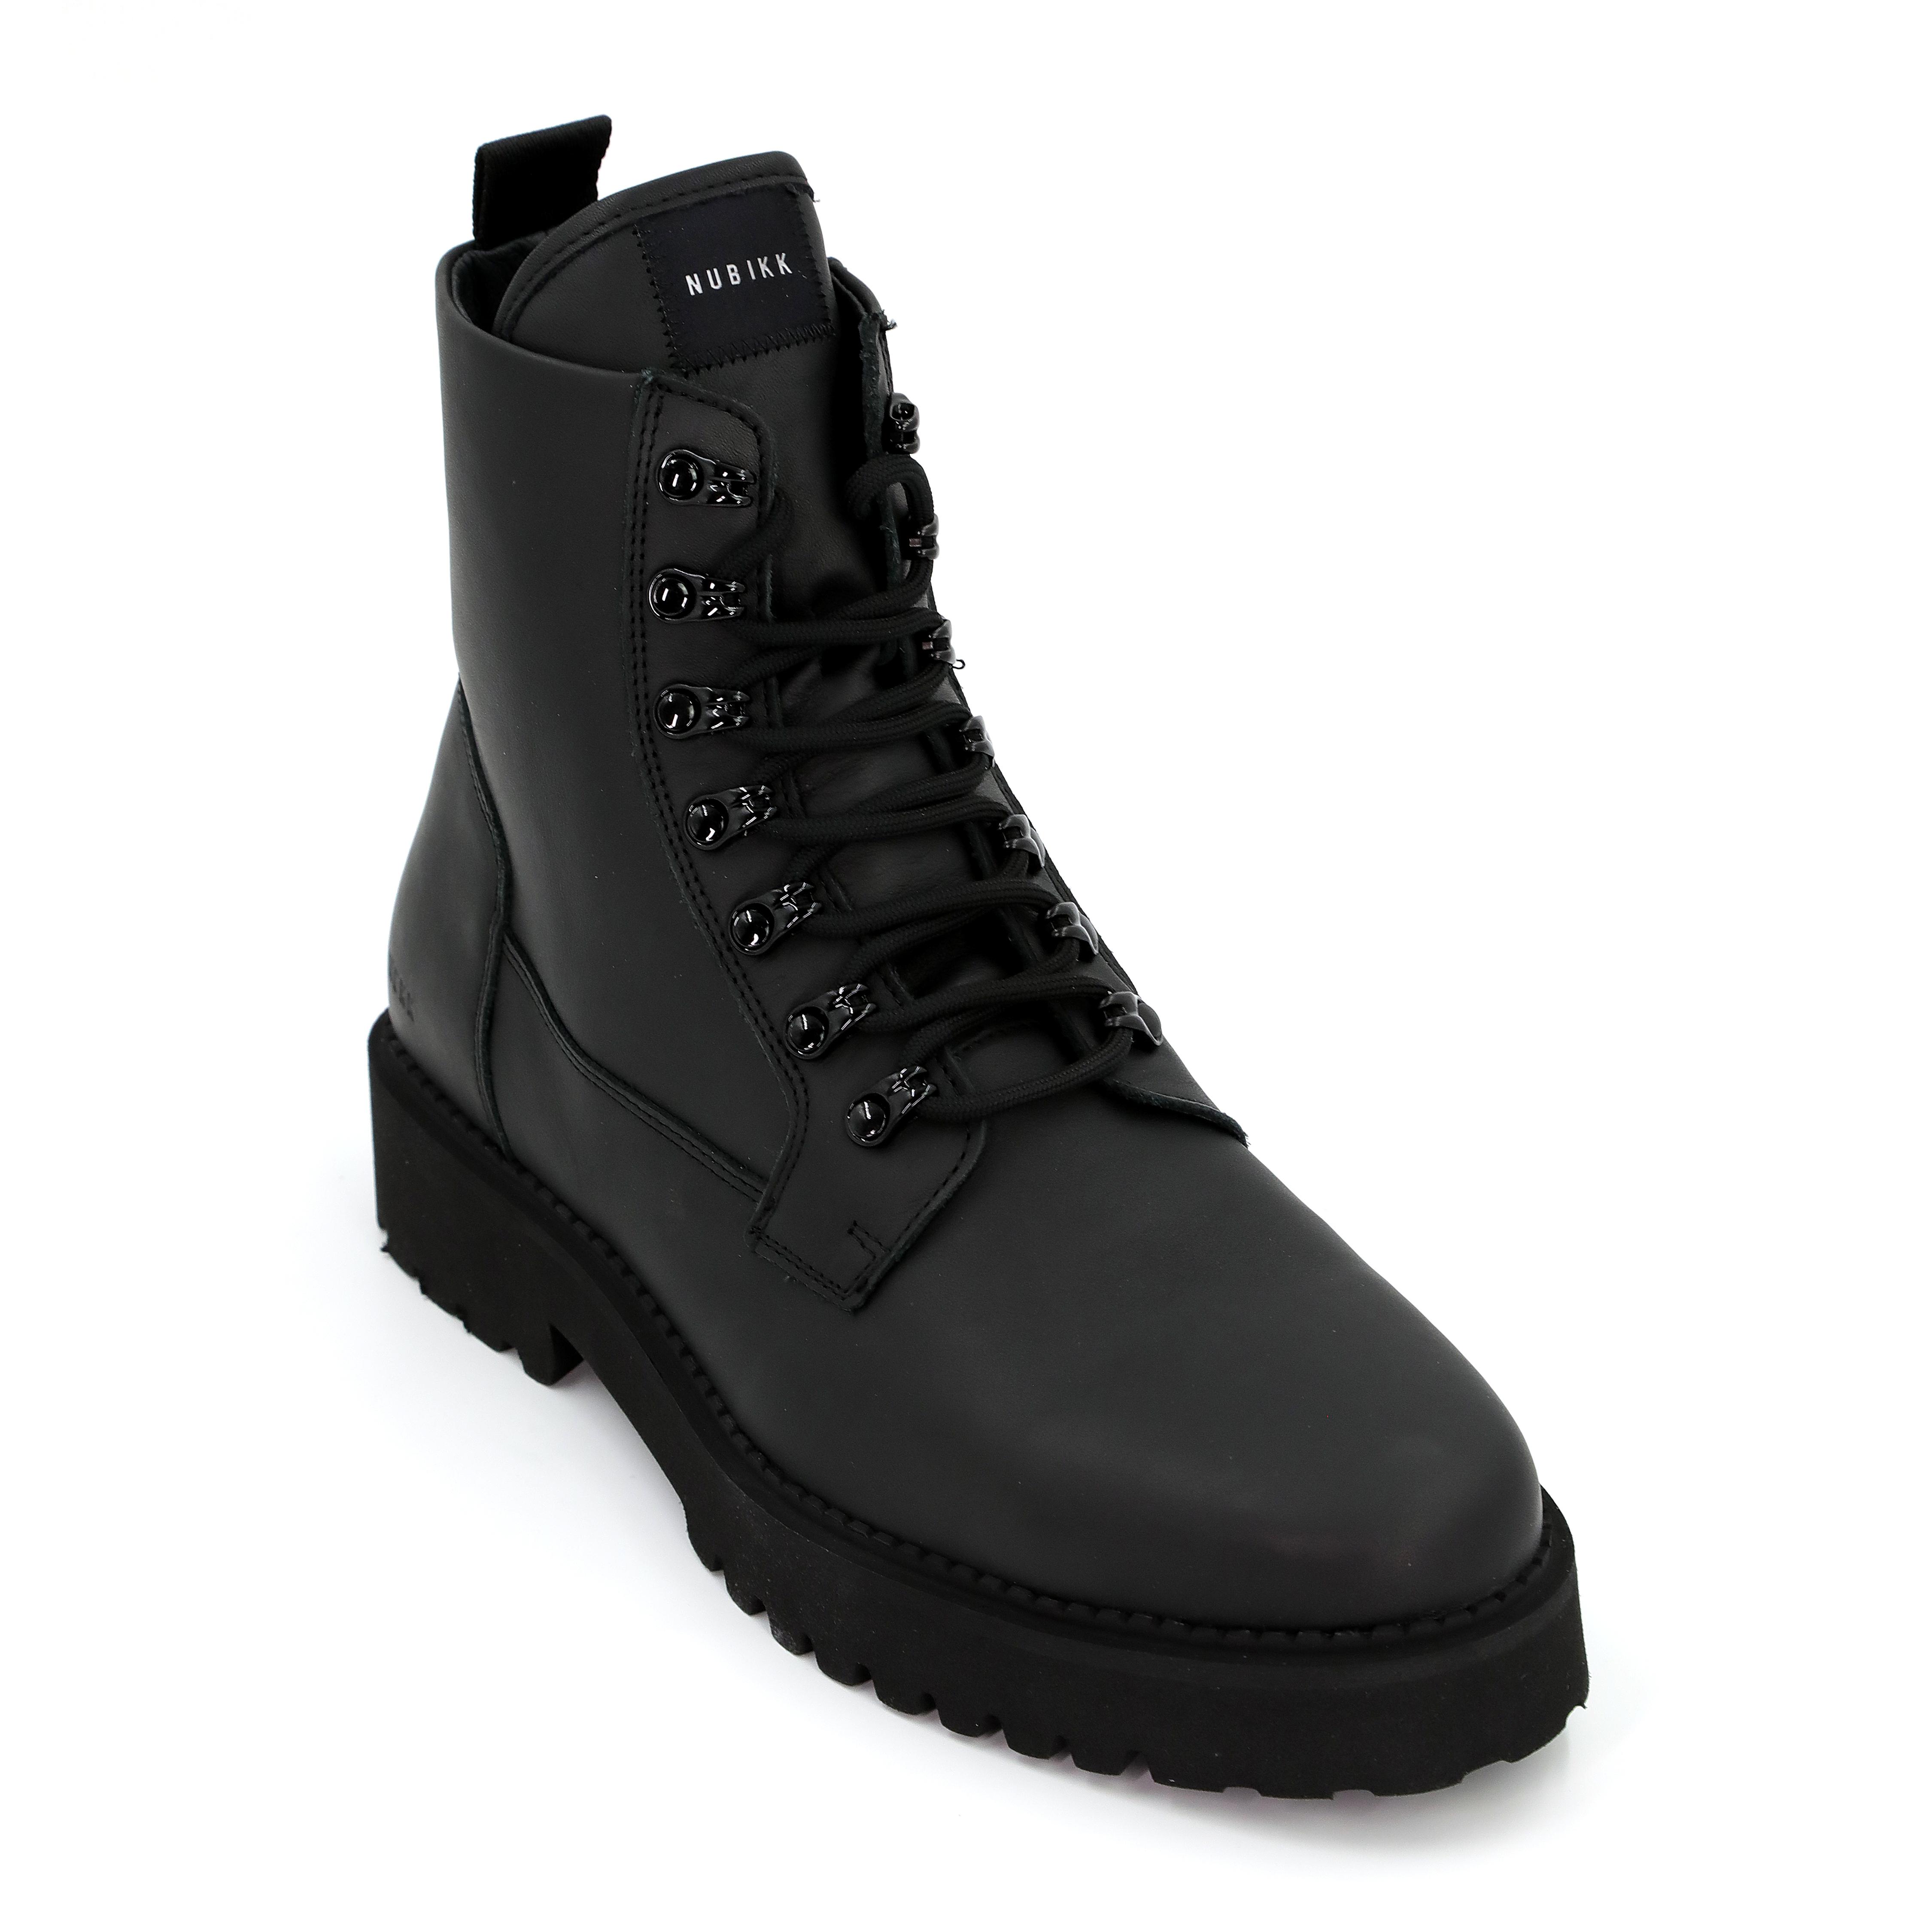 Мужские ботинки Nubikk, черные, цвет черный, размер 42 - фото 4